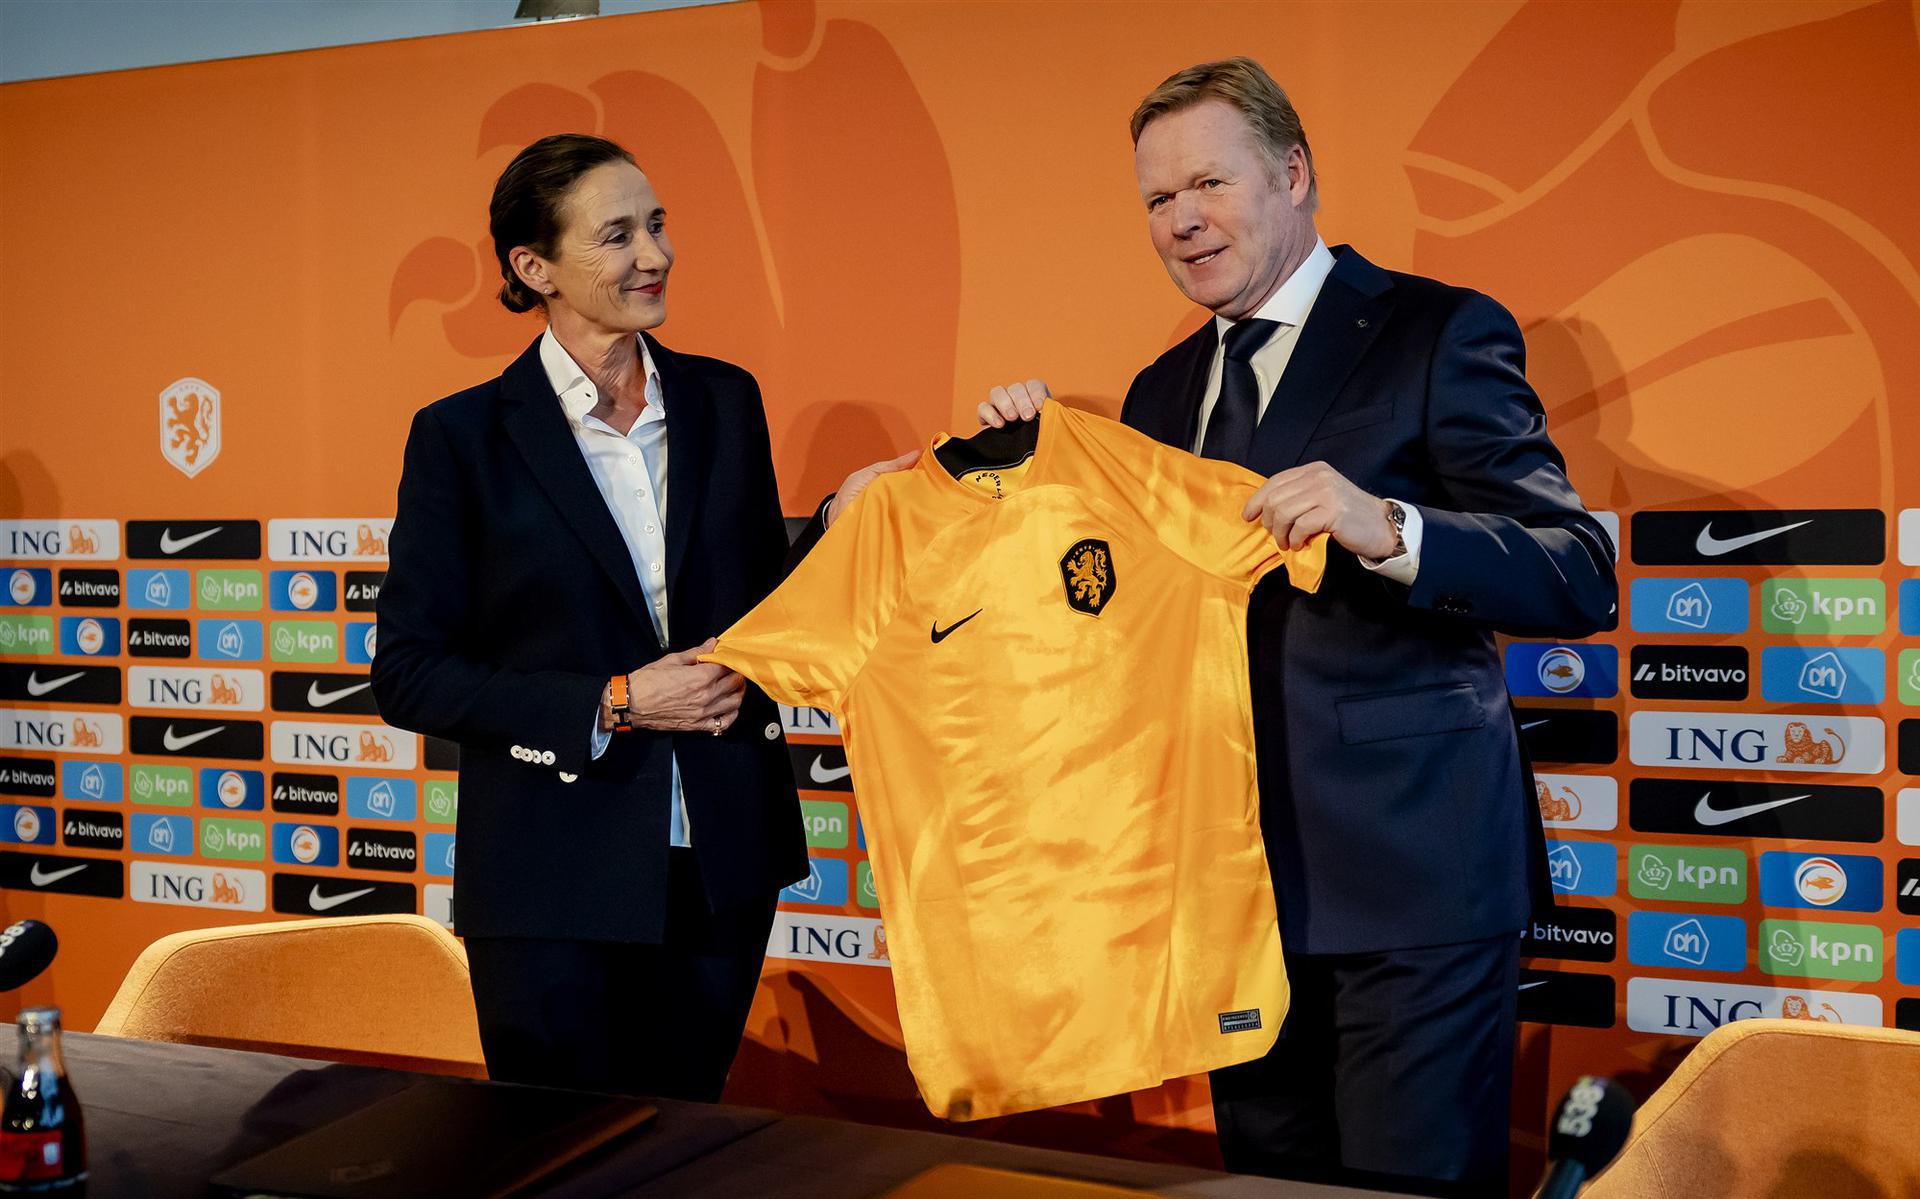 Bondscoach Ronald Koeman krijgt het oranje shirt van Marianne van Leeuwen, directeur betaald voetbal.